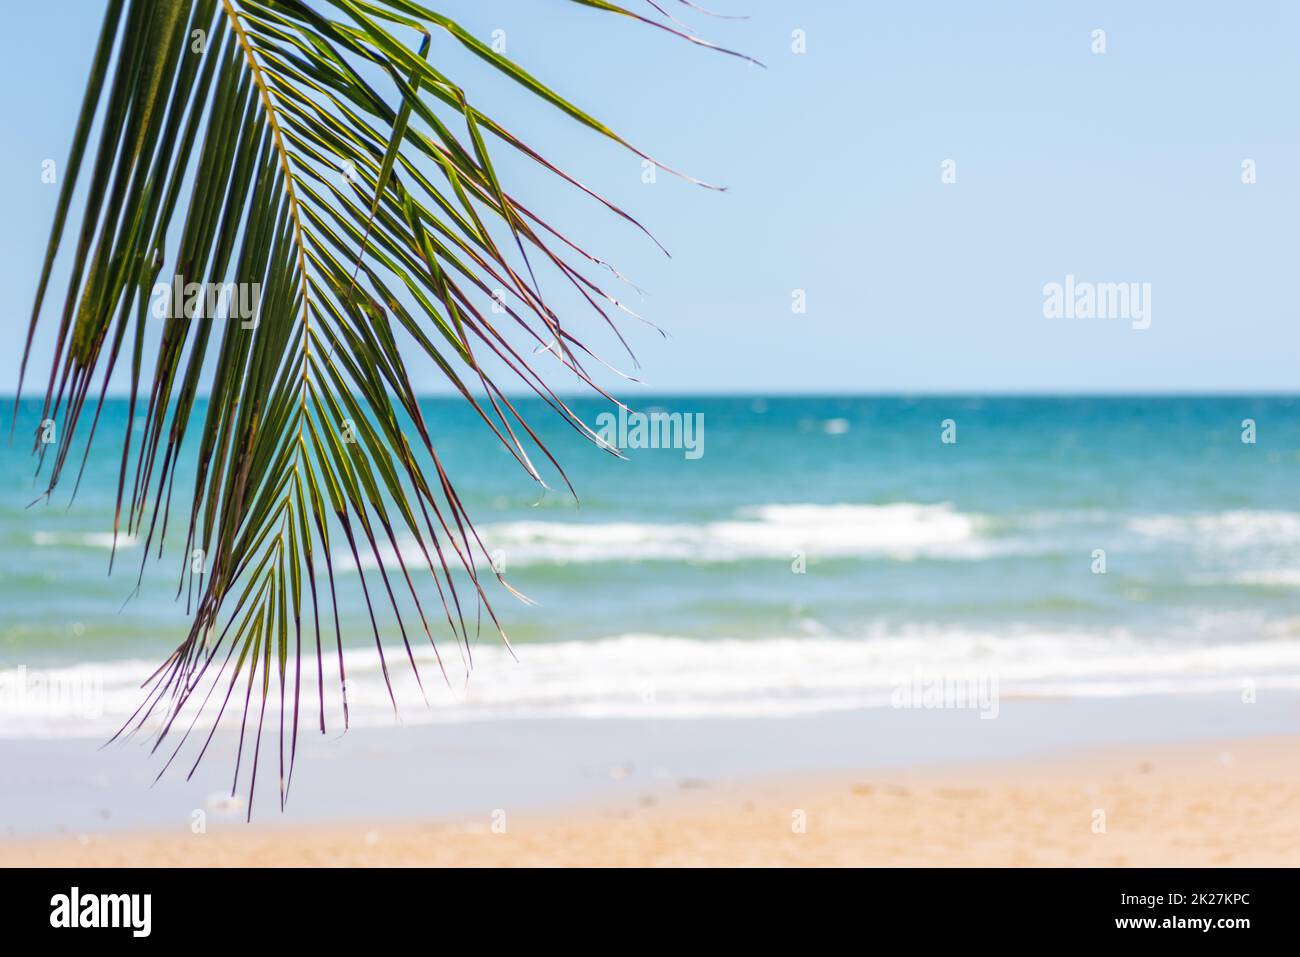 Bella spiaggia tropicale sabbia bianca acqua turchese oceano e cielo blu con nuvole Foto Stock